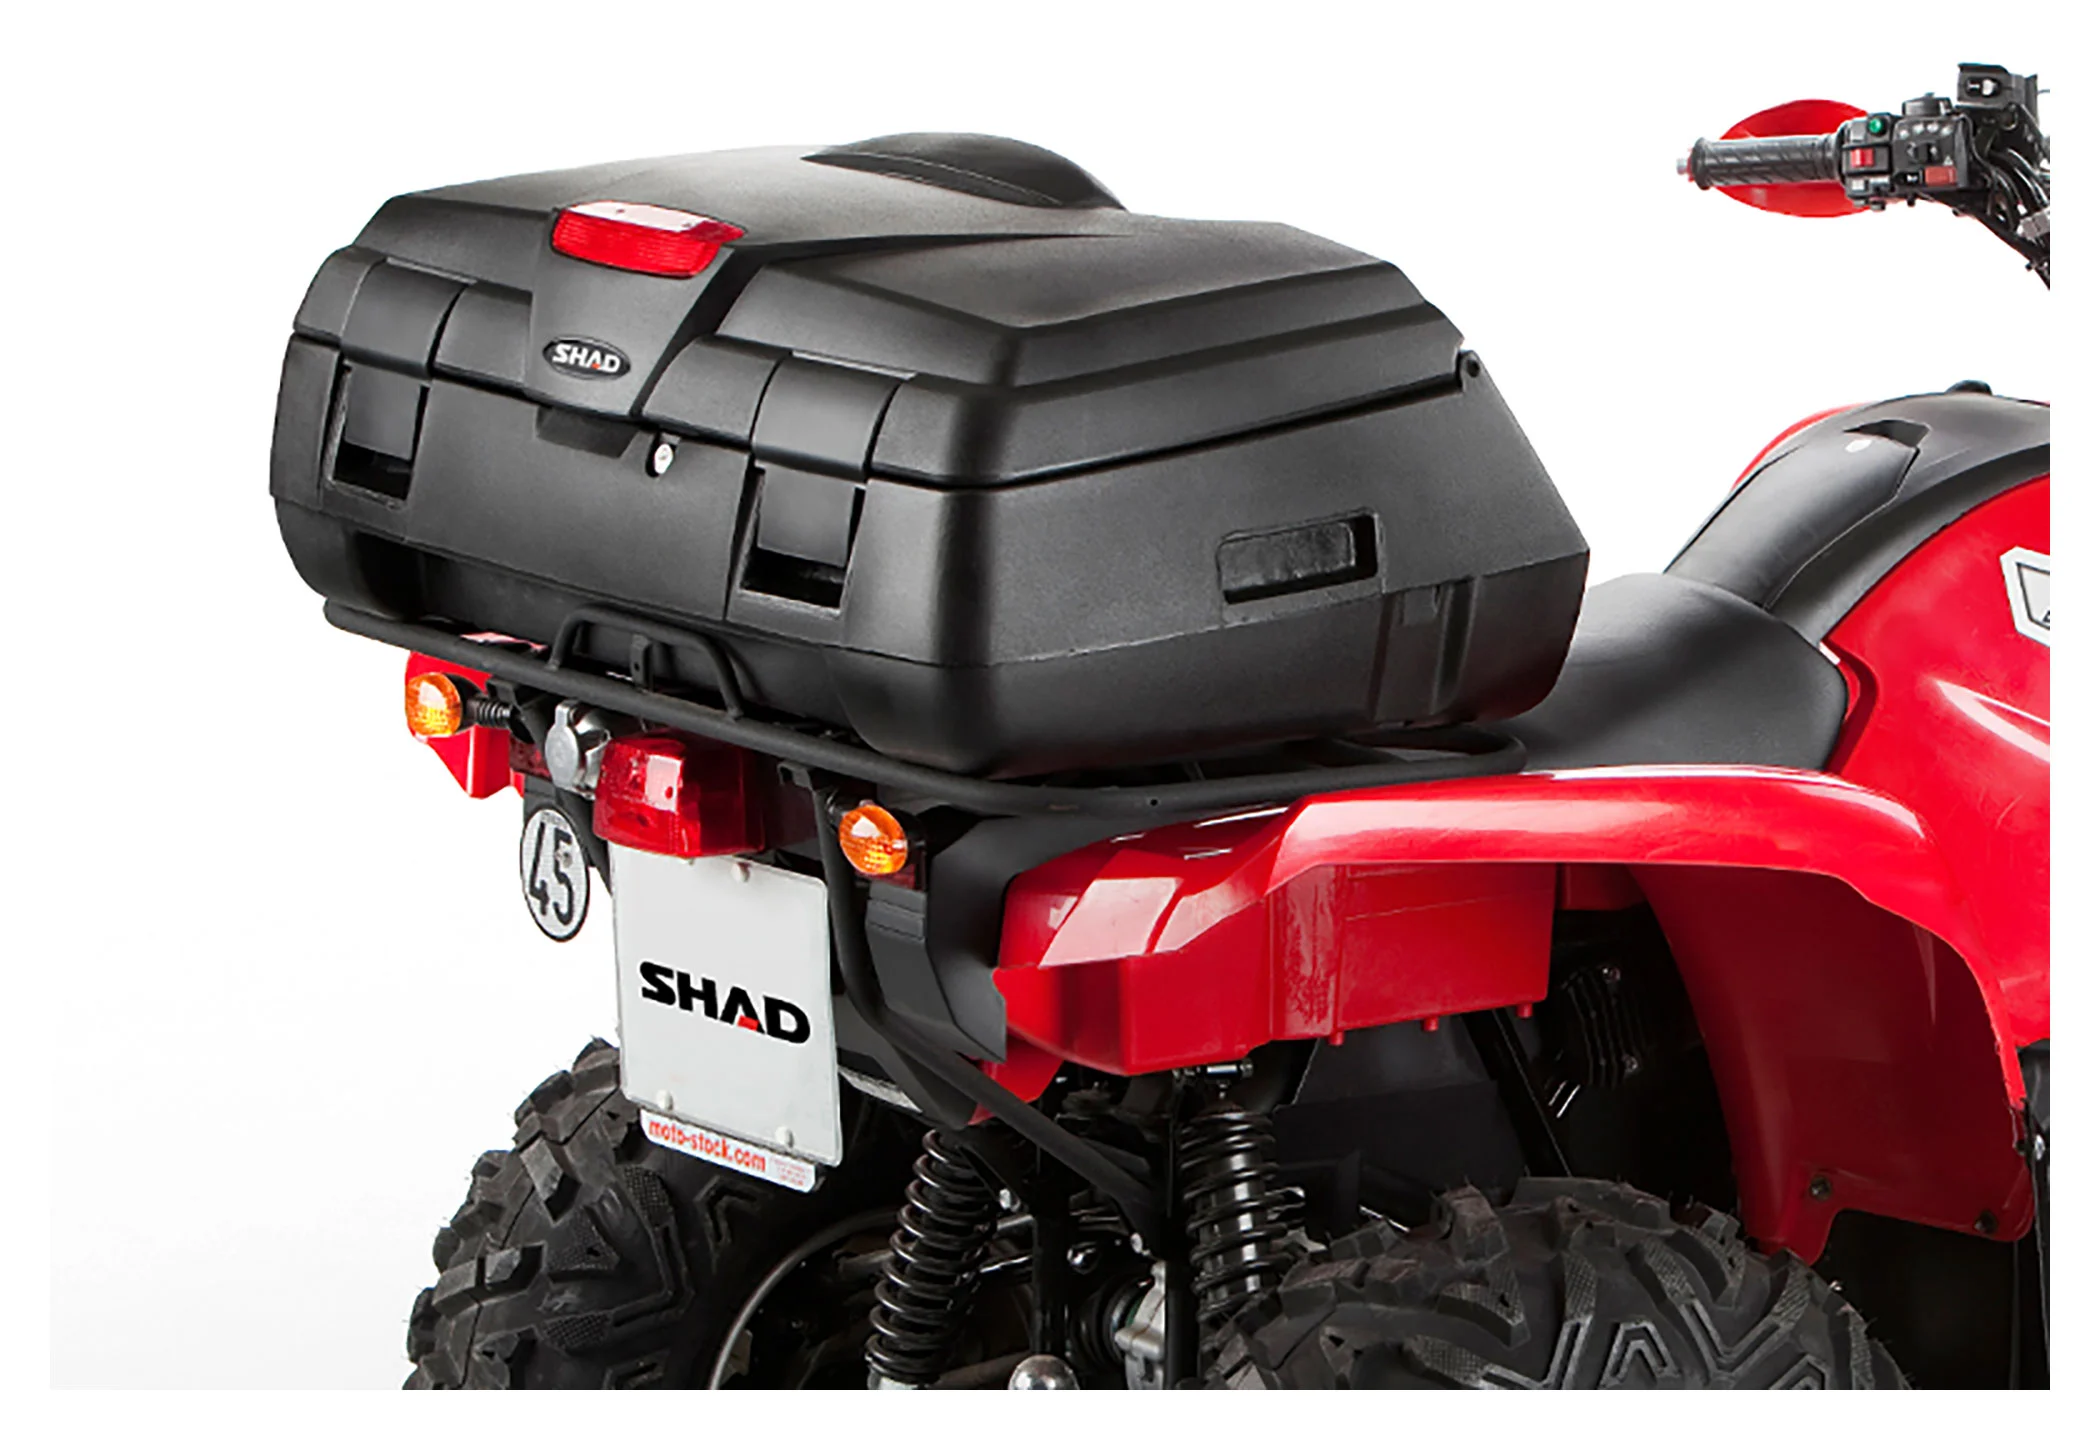 Universal Rückstrahler Reflektor T-Halter Motorrad Roller Quad ATV